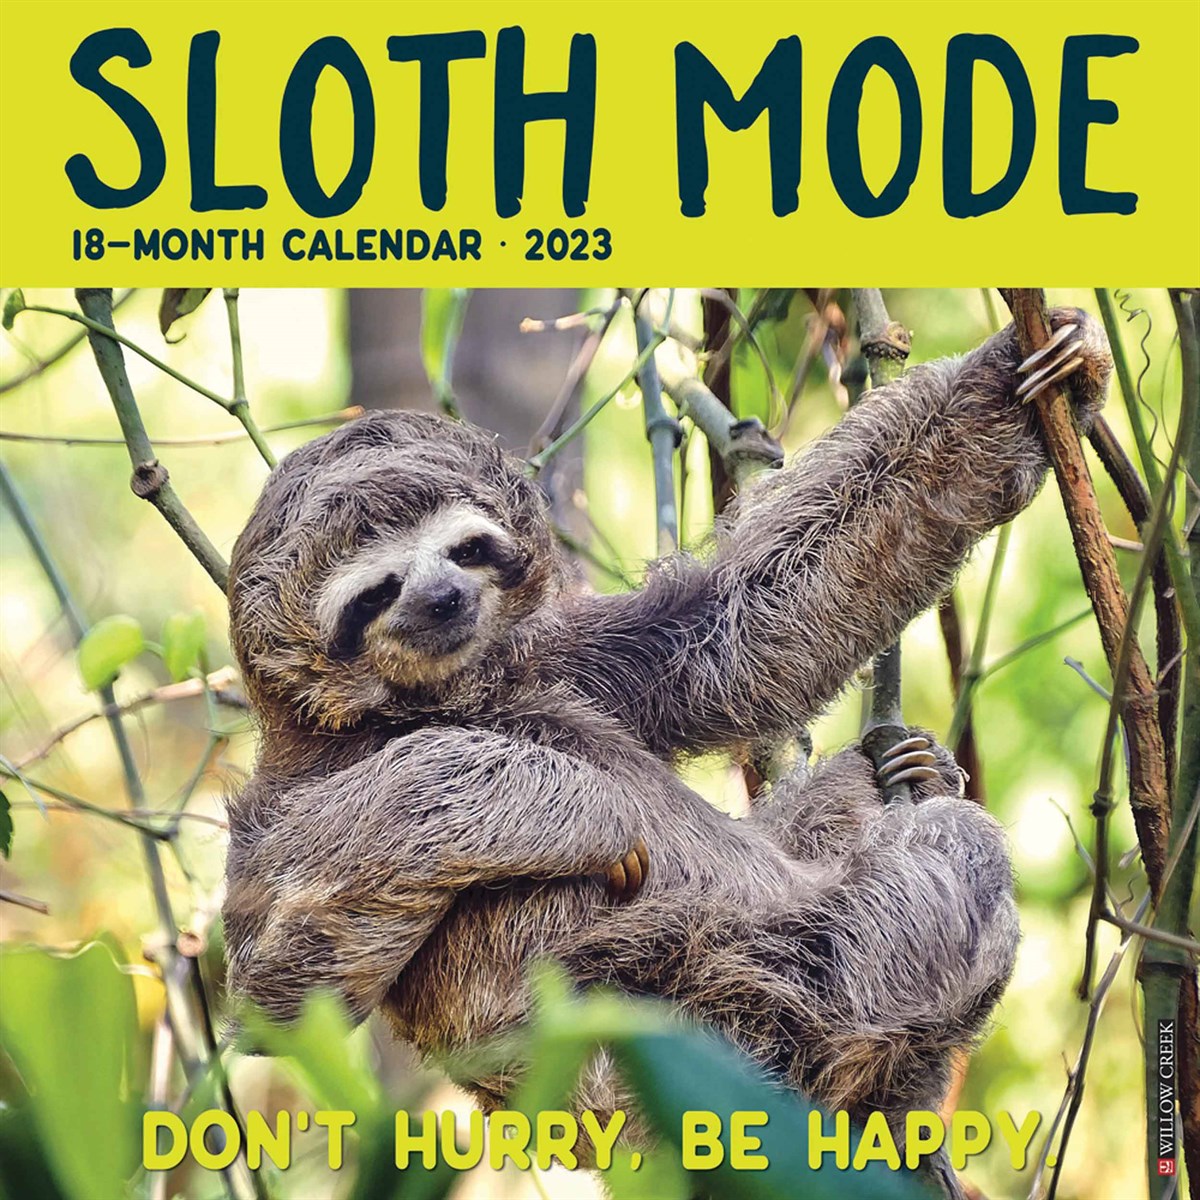 Sloth Mode 2023 Calendars